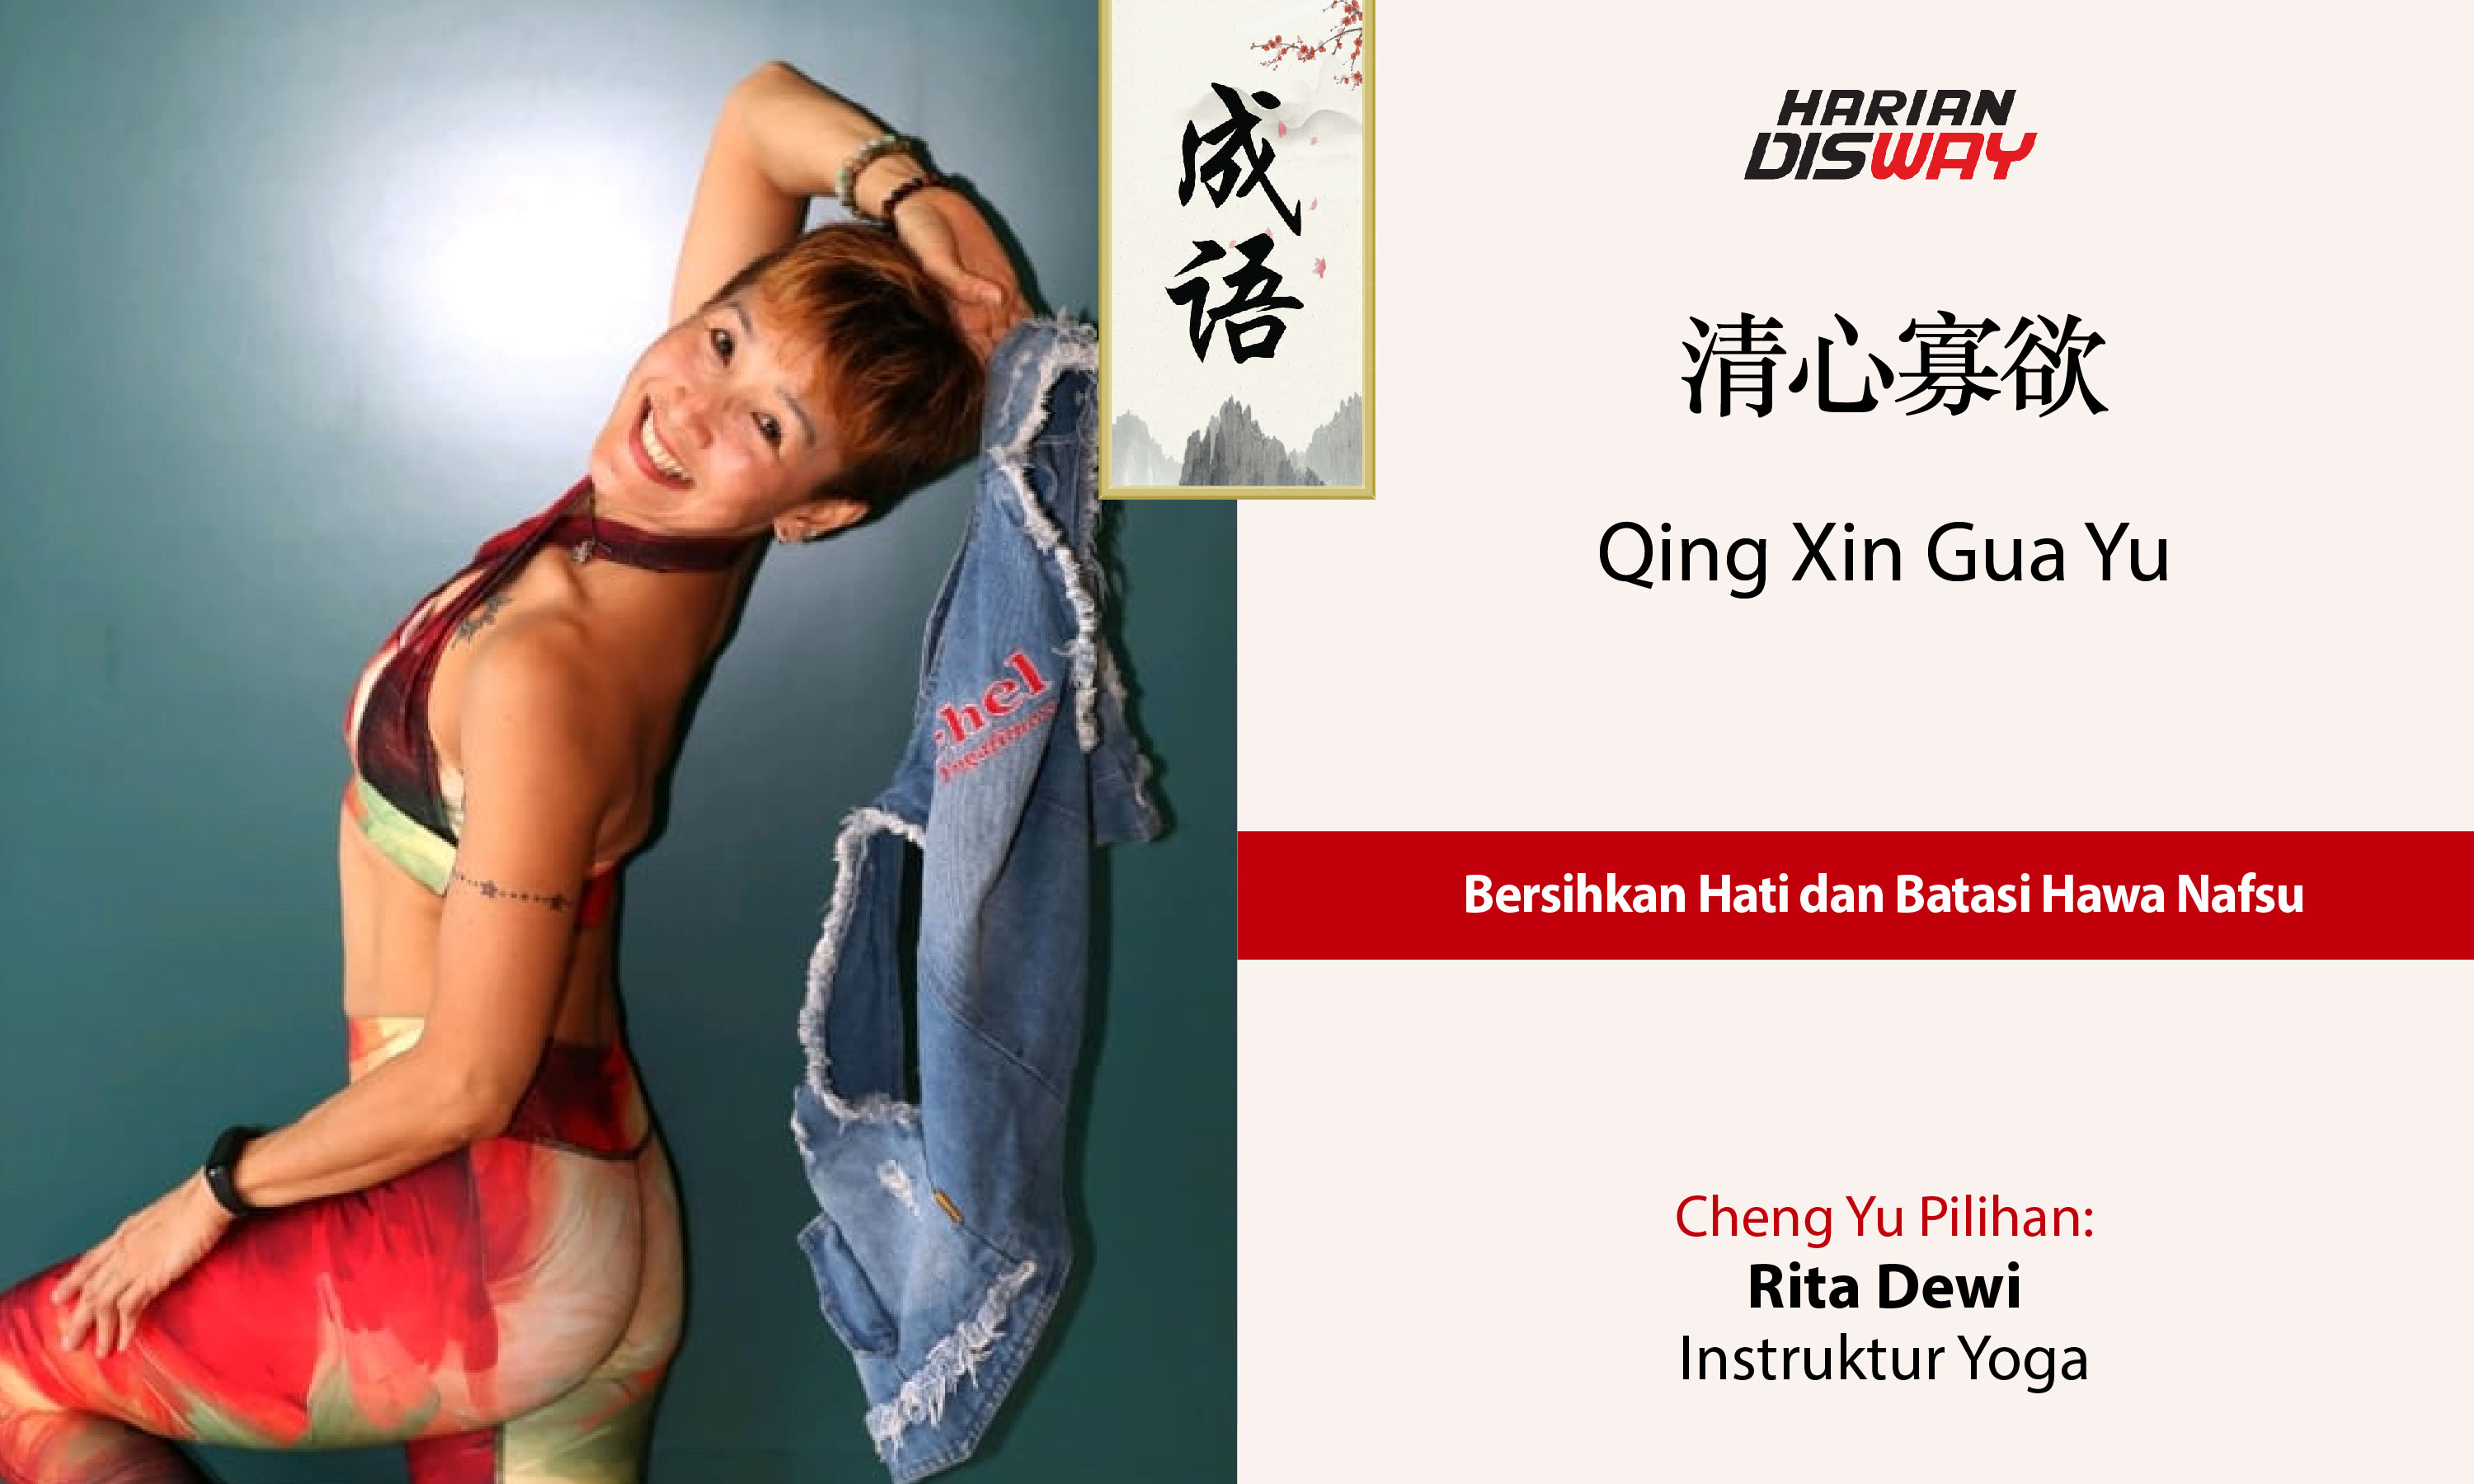 Cheng Yu Pilihan Instruktur Yoga Rita Dewi: Qing Xin Gua Yu